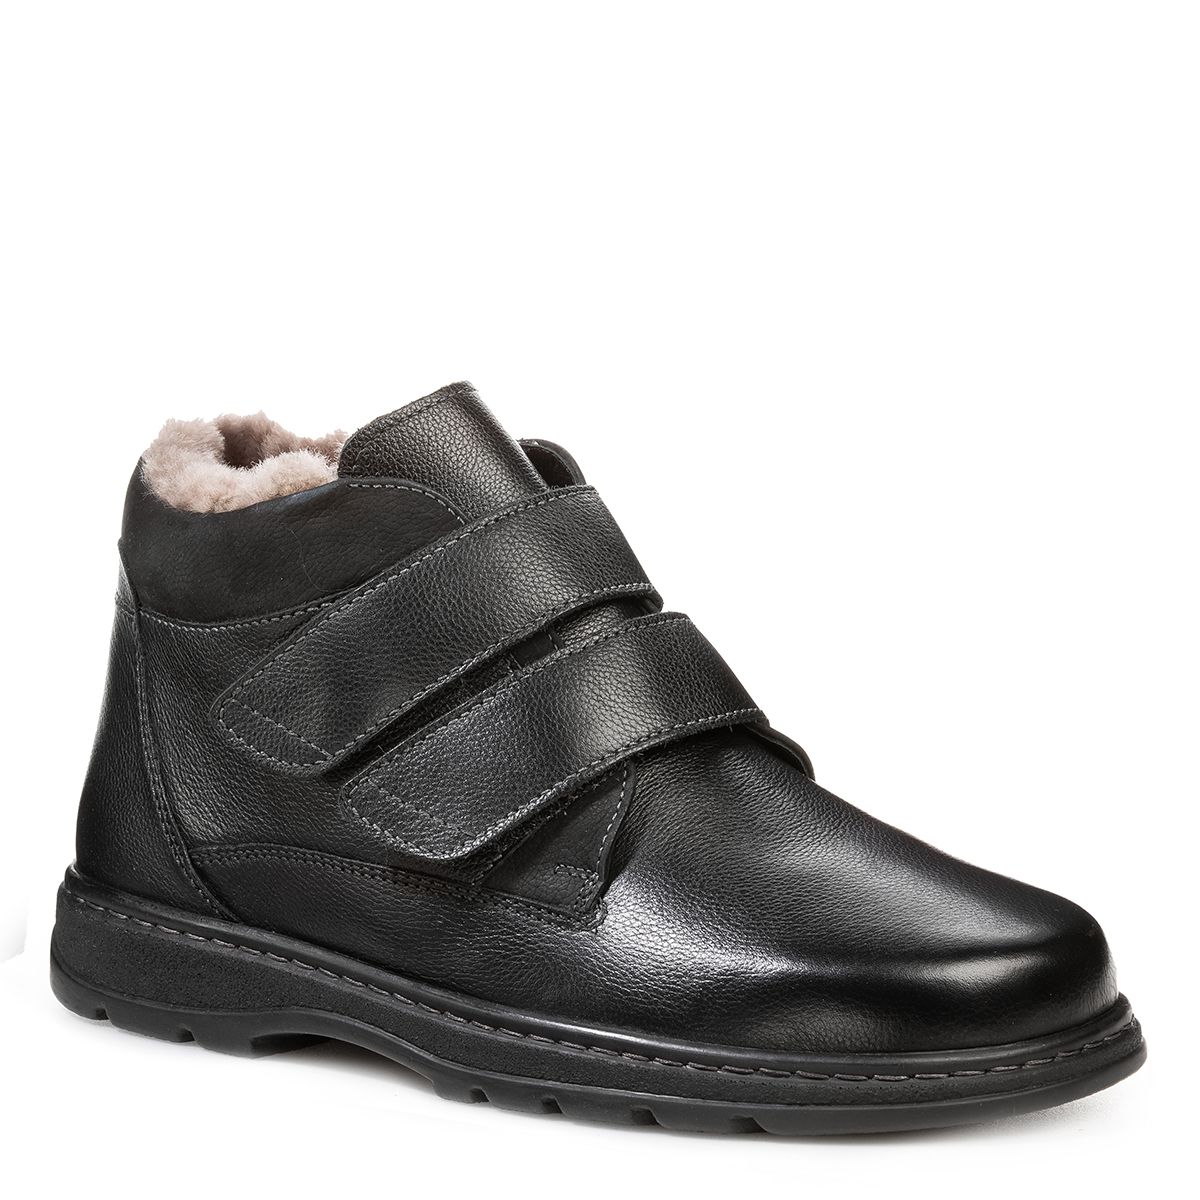 Мужские зимние ботинки Solidus Natura Man Stiefel черные женские ботинки kelly stiefel solidus черные